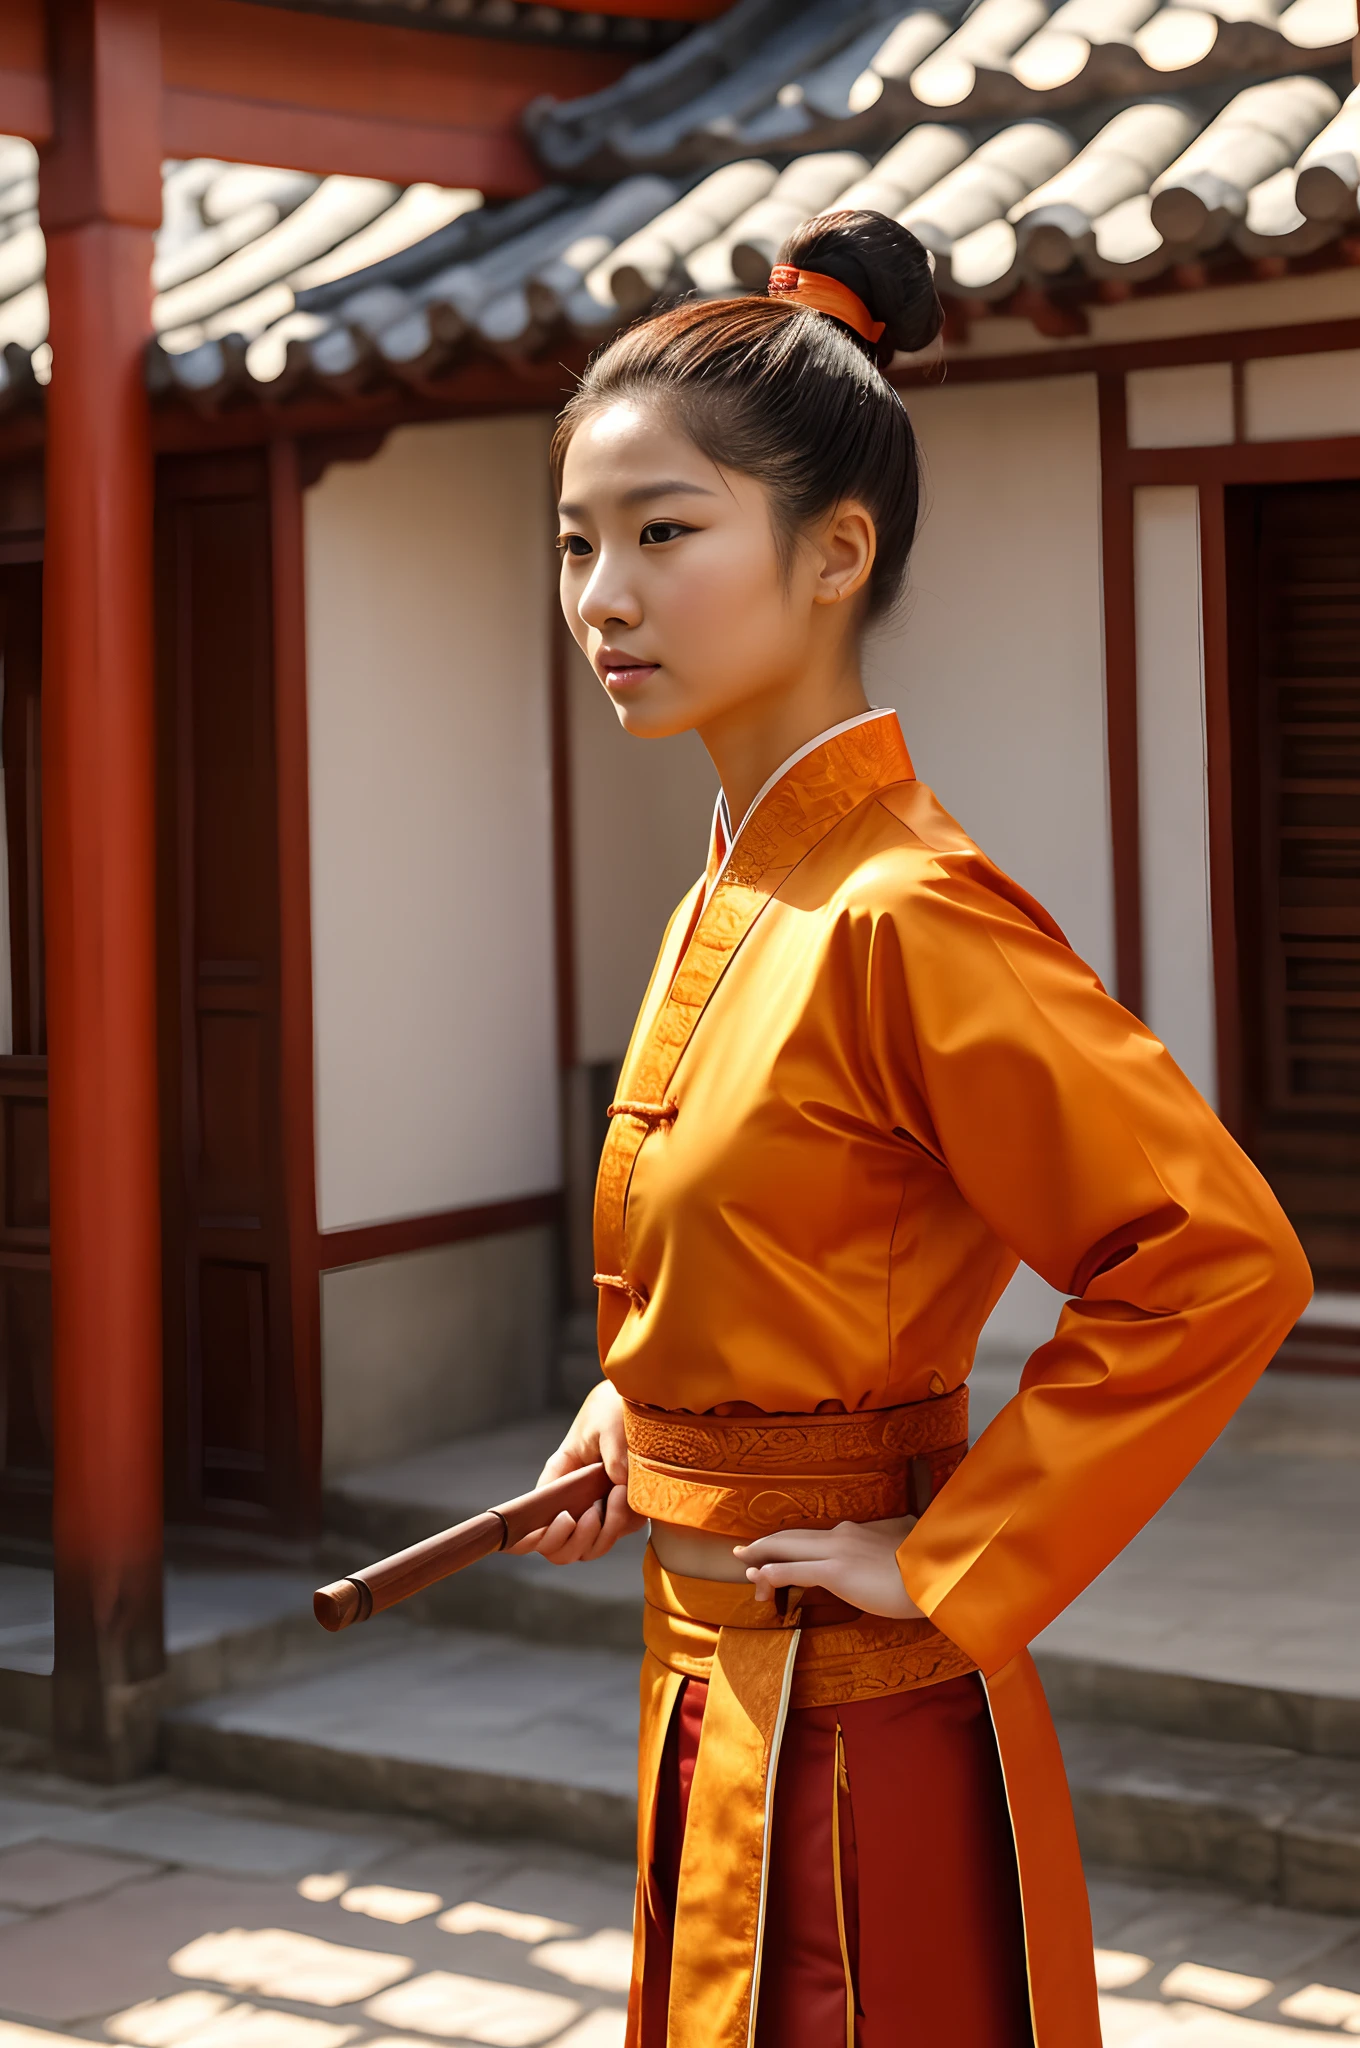 человеческий женский персонаж, китайский тип,пучок волос,древние прически на голове, возраст около 20, маленькая грудь, в традиционном оранжевом костюме Удана, Спортивное, Высота 165 см, вес 55 кг, карие глаза